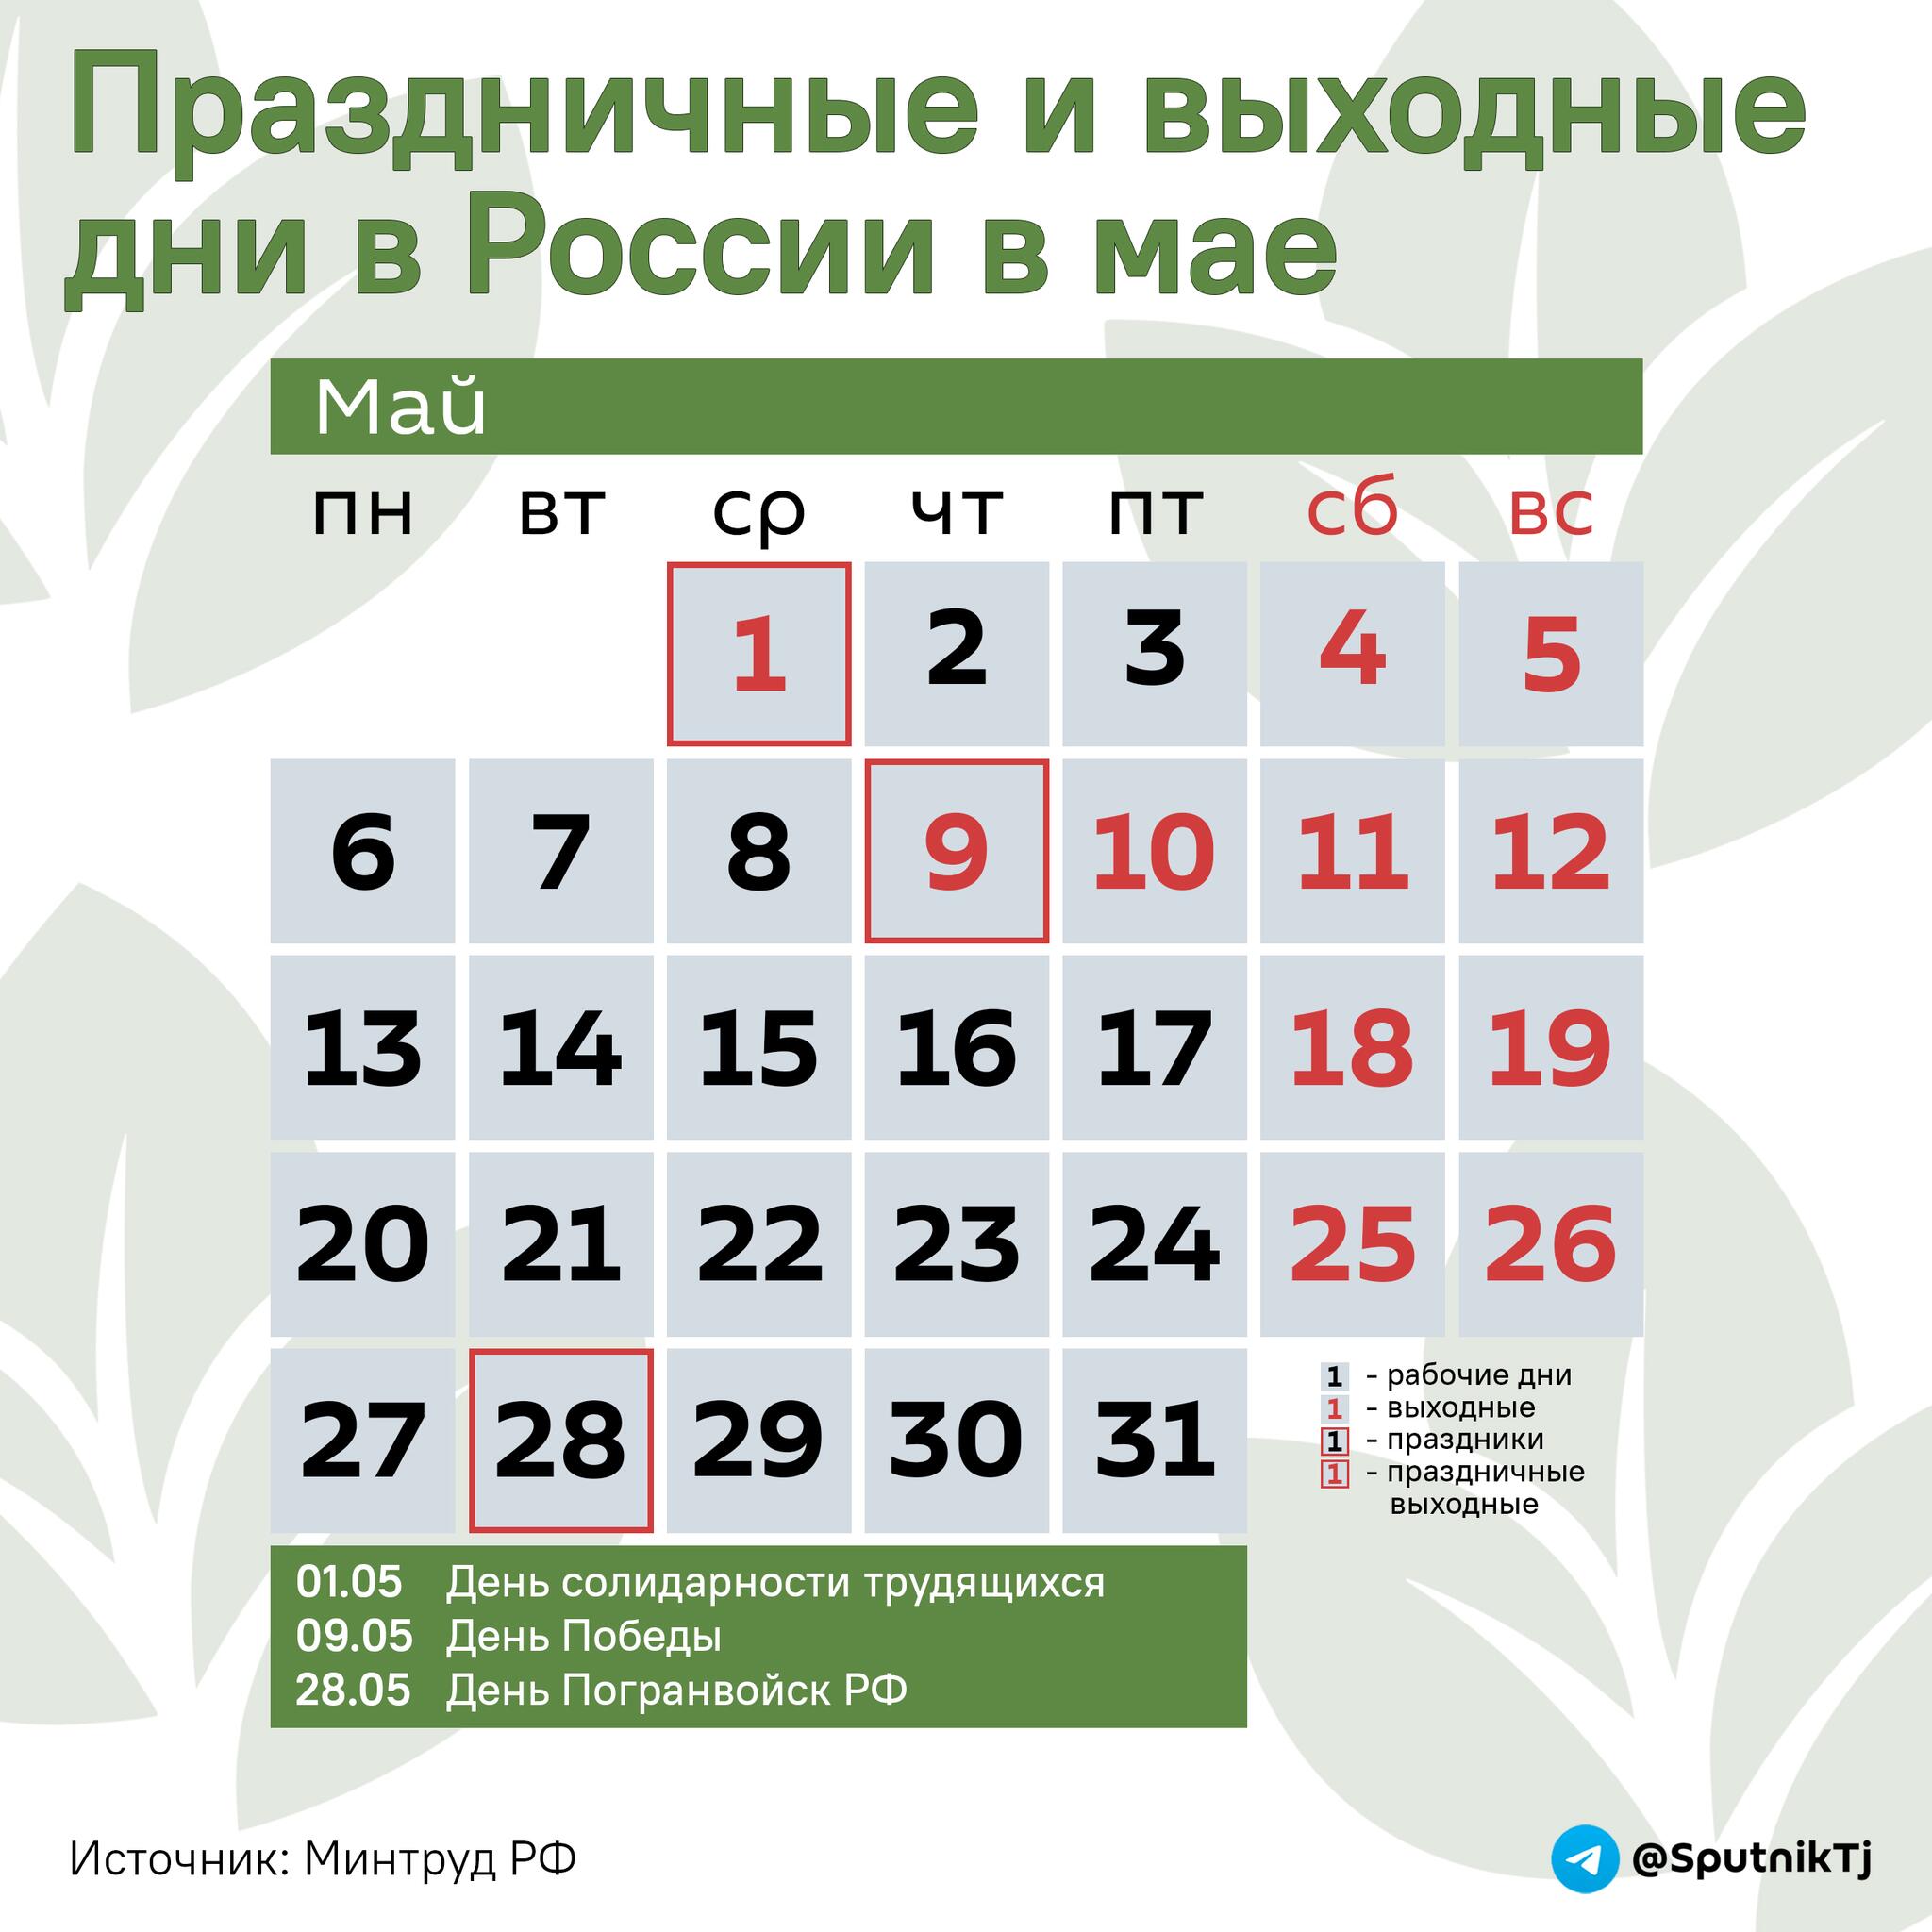 Праздничные и выходные дни в России в мае - Sputnik Таджикистан